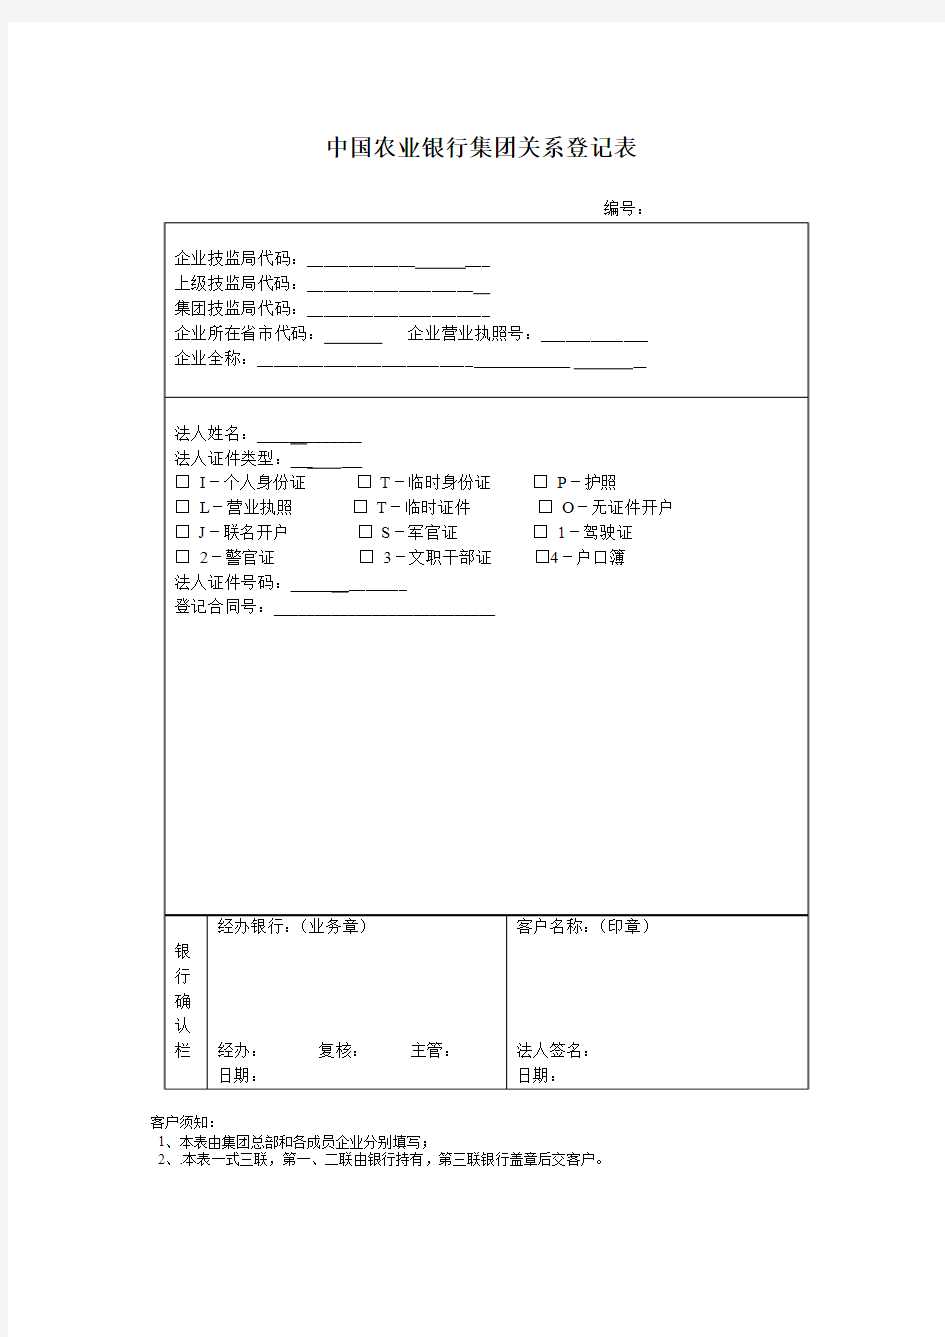 中国农业银行客户资料登记表